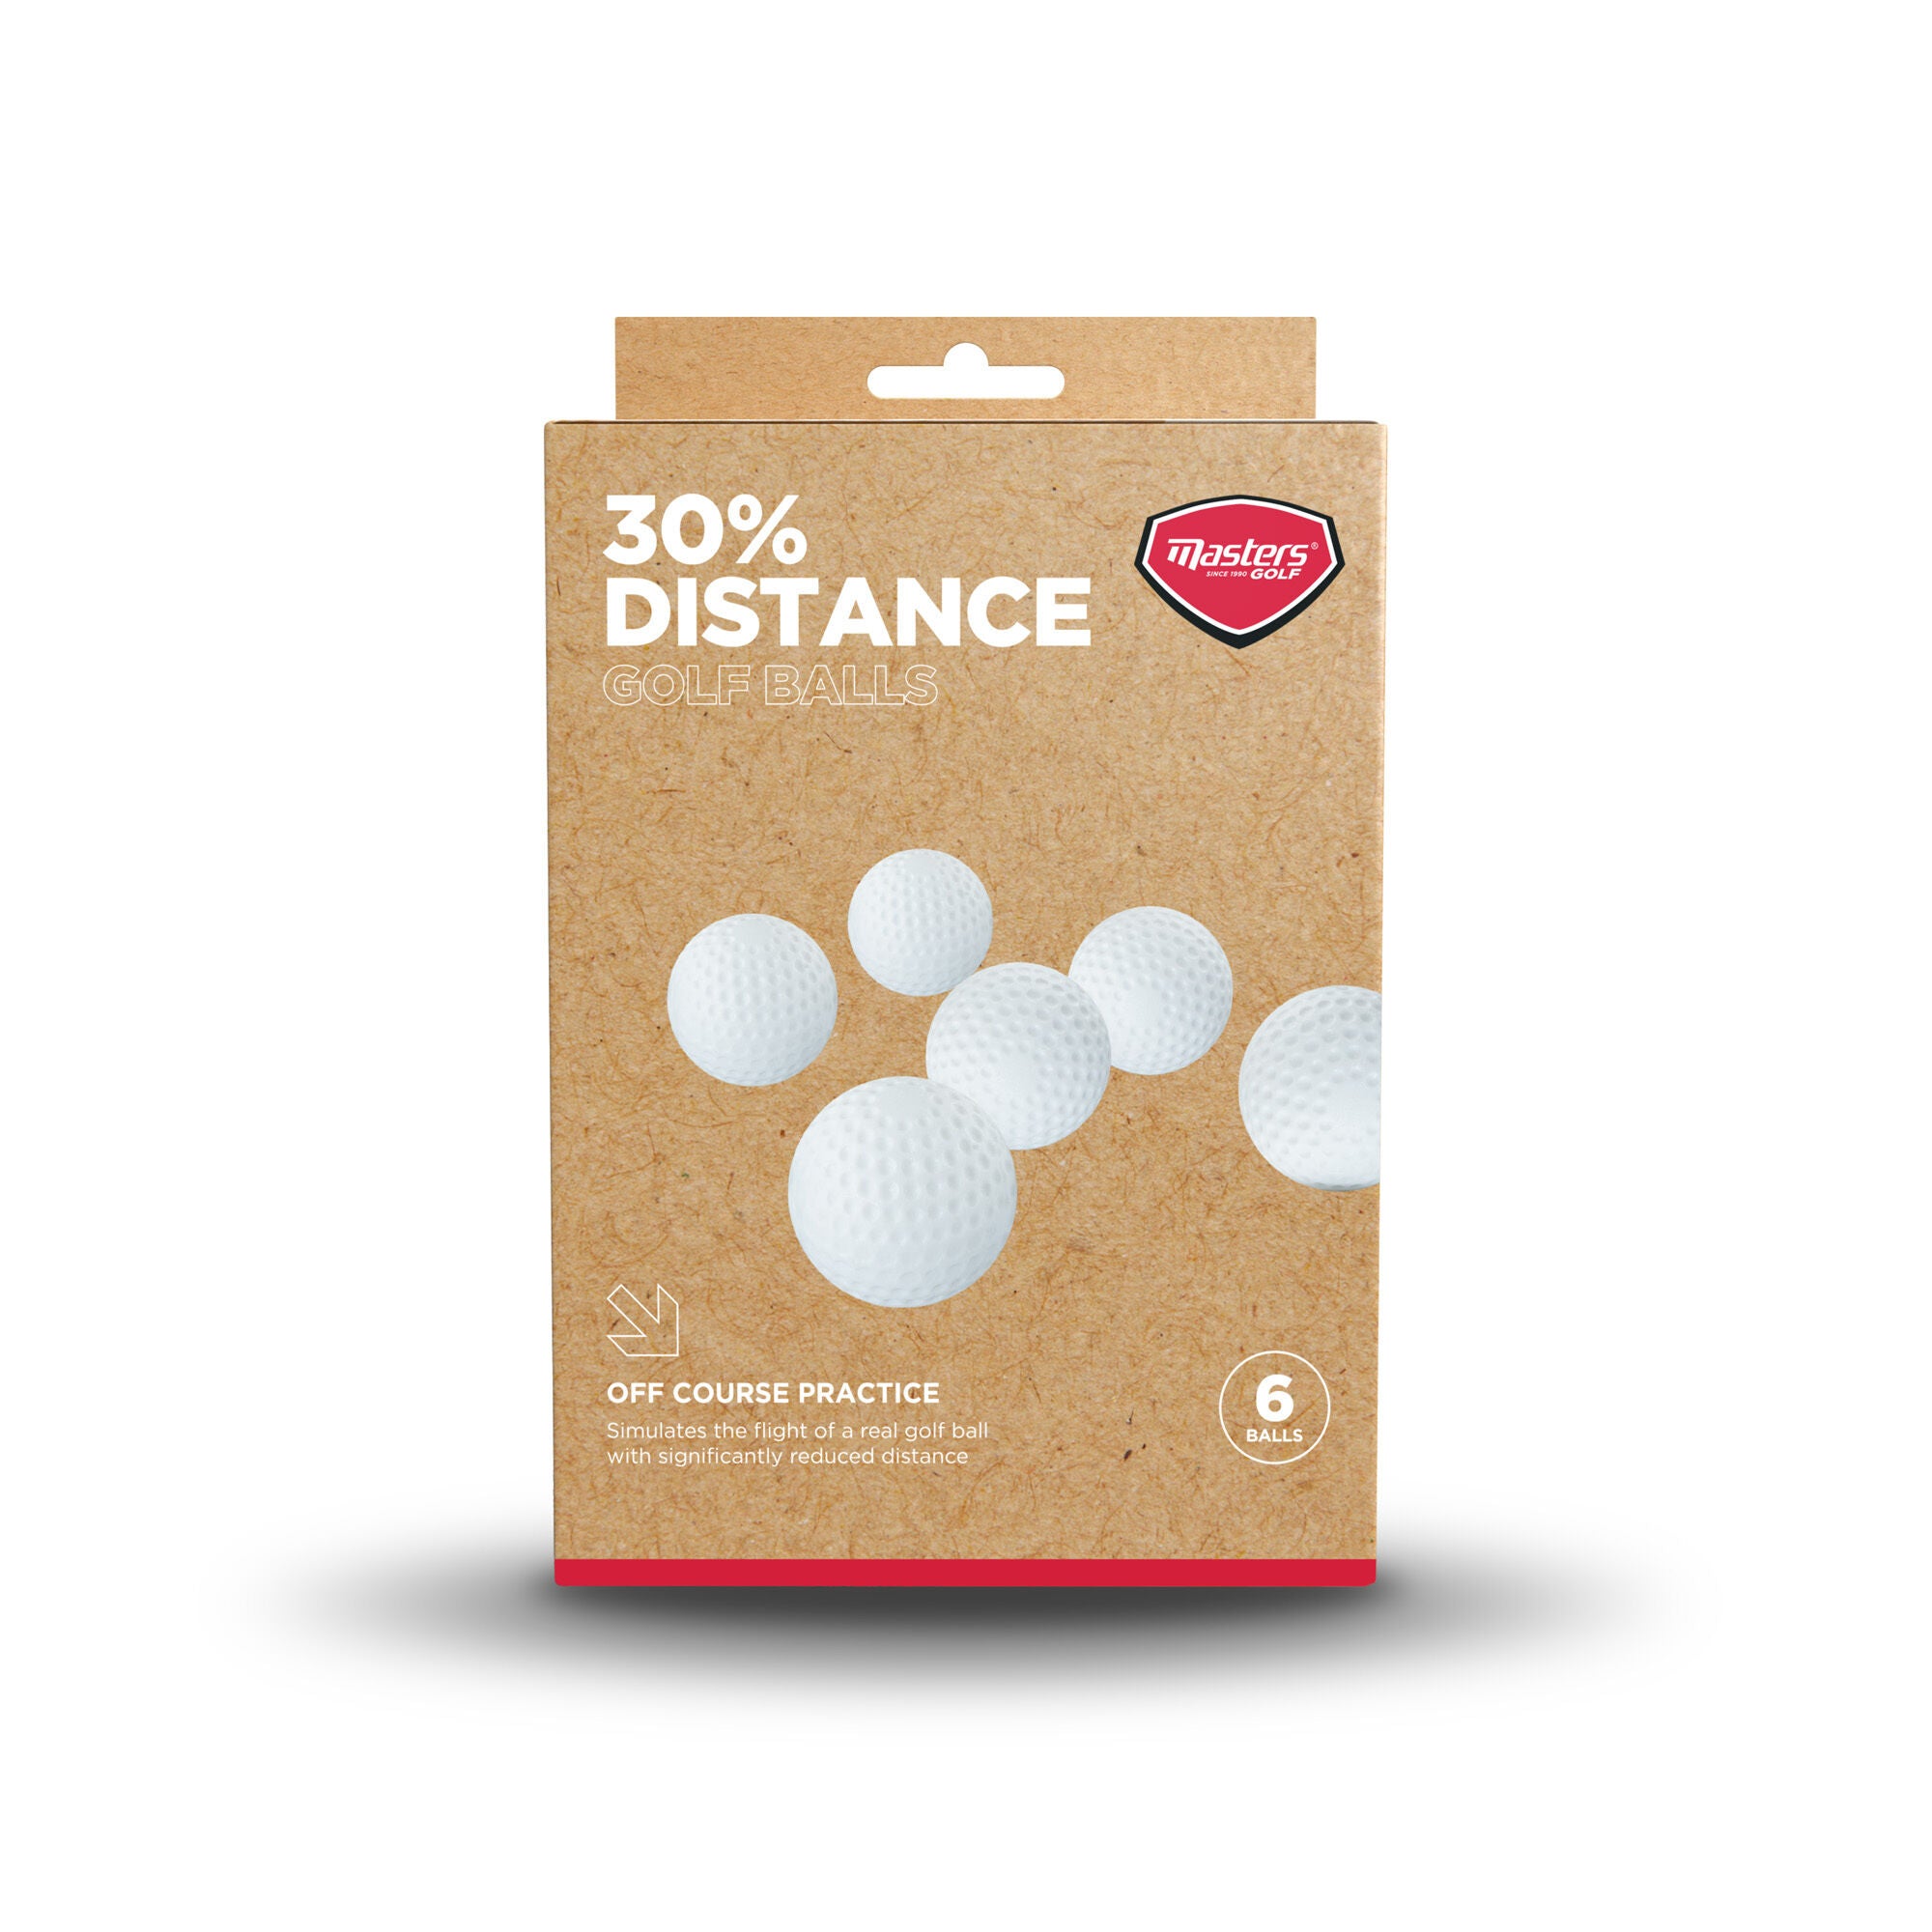 30% Distance Golf Balls pack of 6